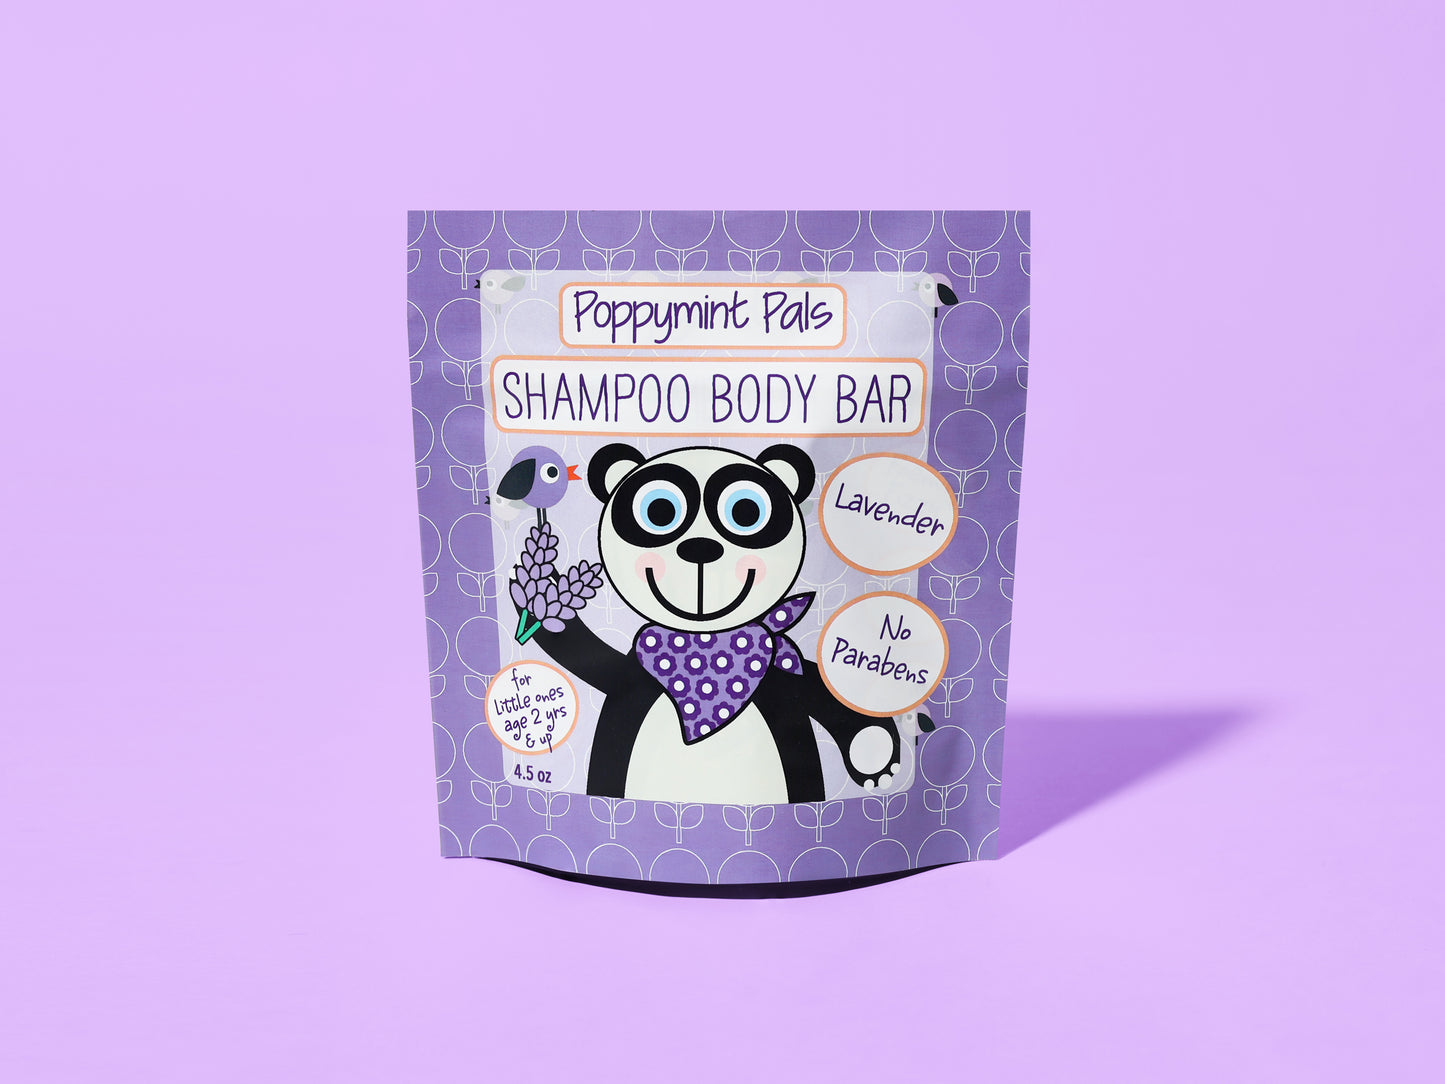 Shampoo Body Bar